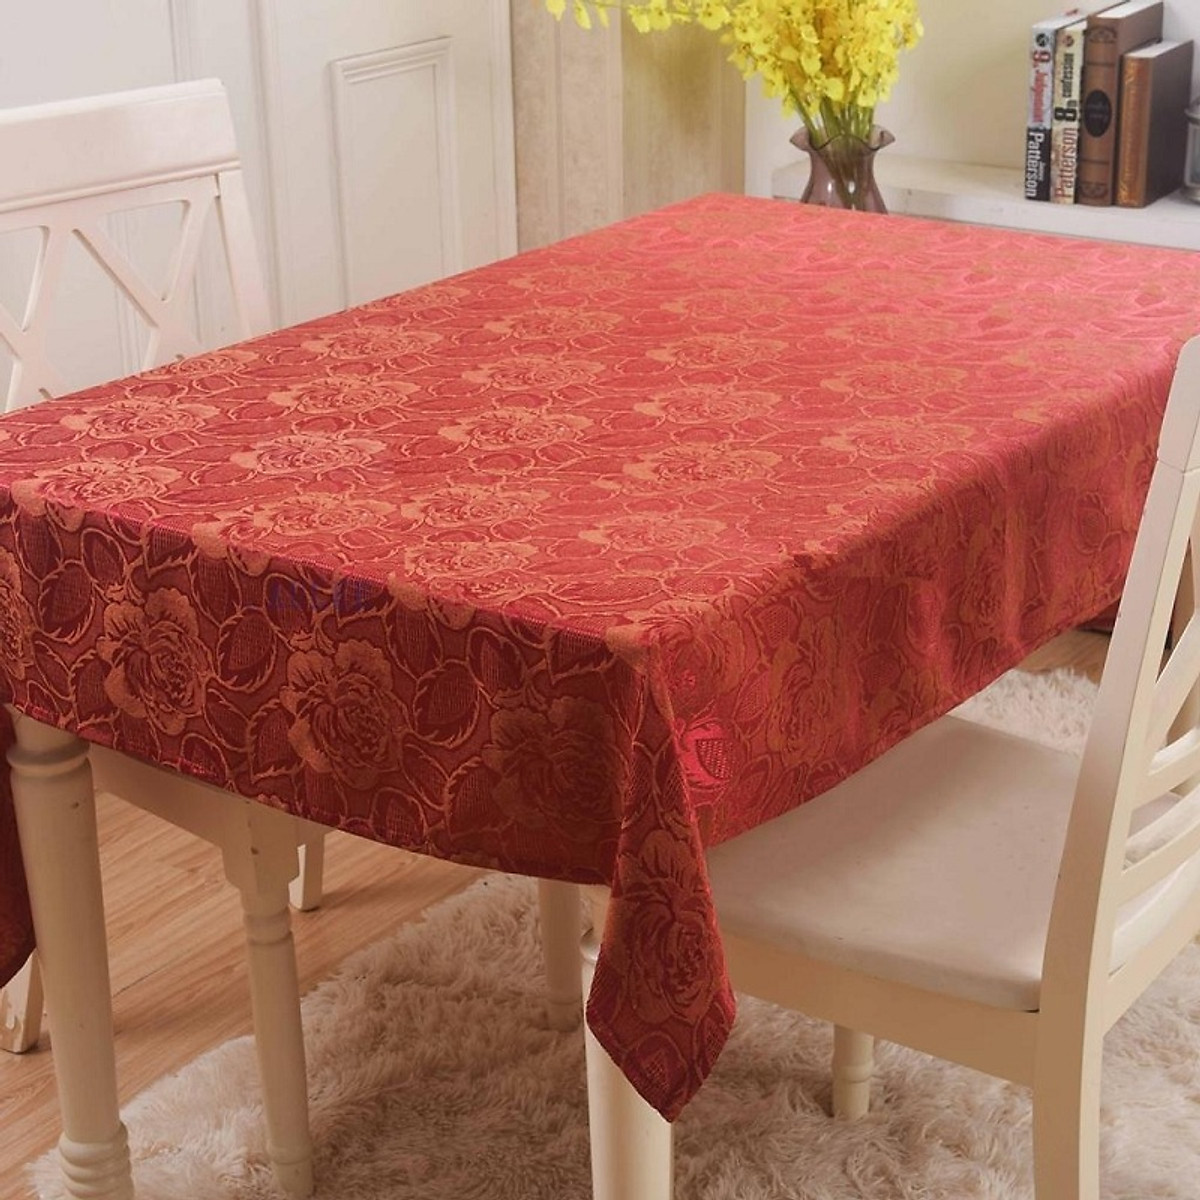 Chỉ từ 67k liền có ngay mẫu khăn trải bàn mới cho bàn ăn gia đình ngày Tết thêm xinh - Ảnh 4.